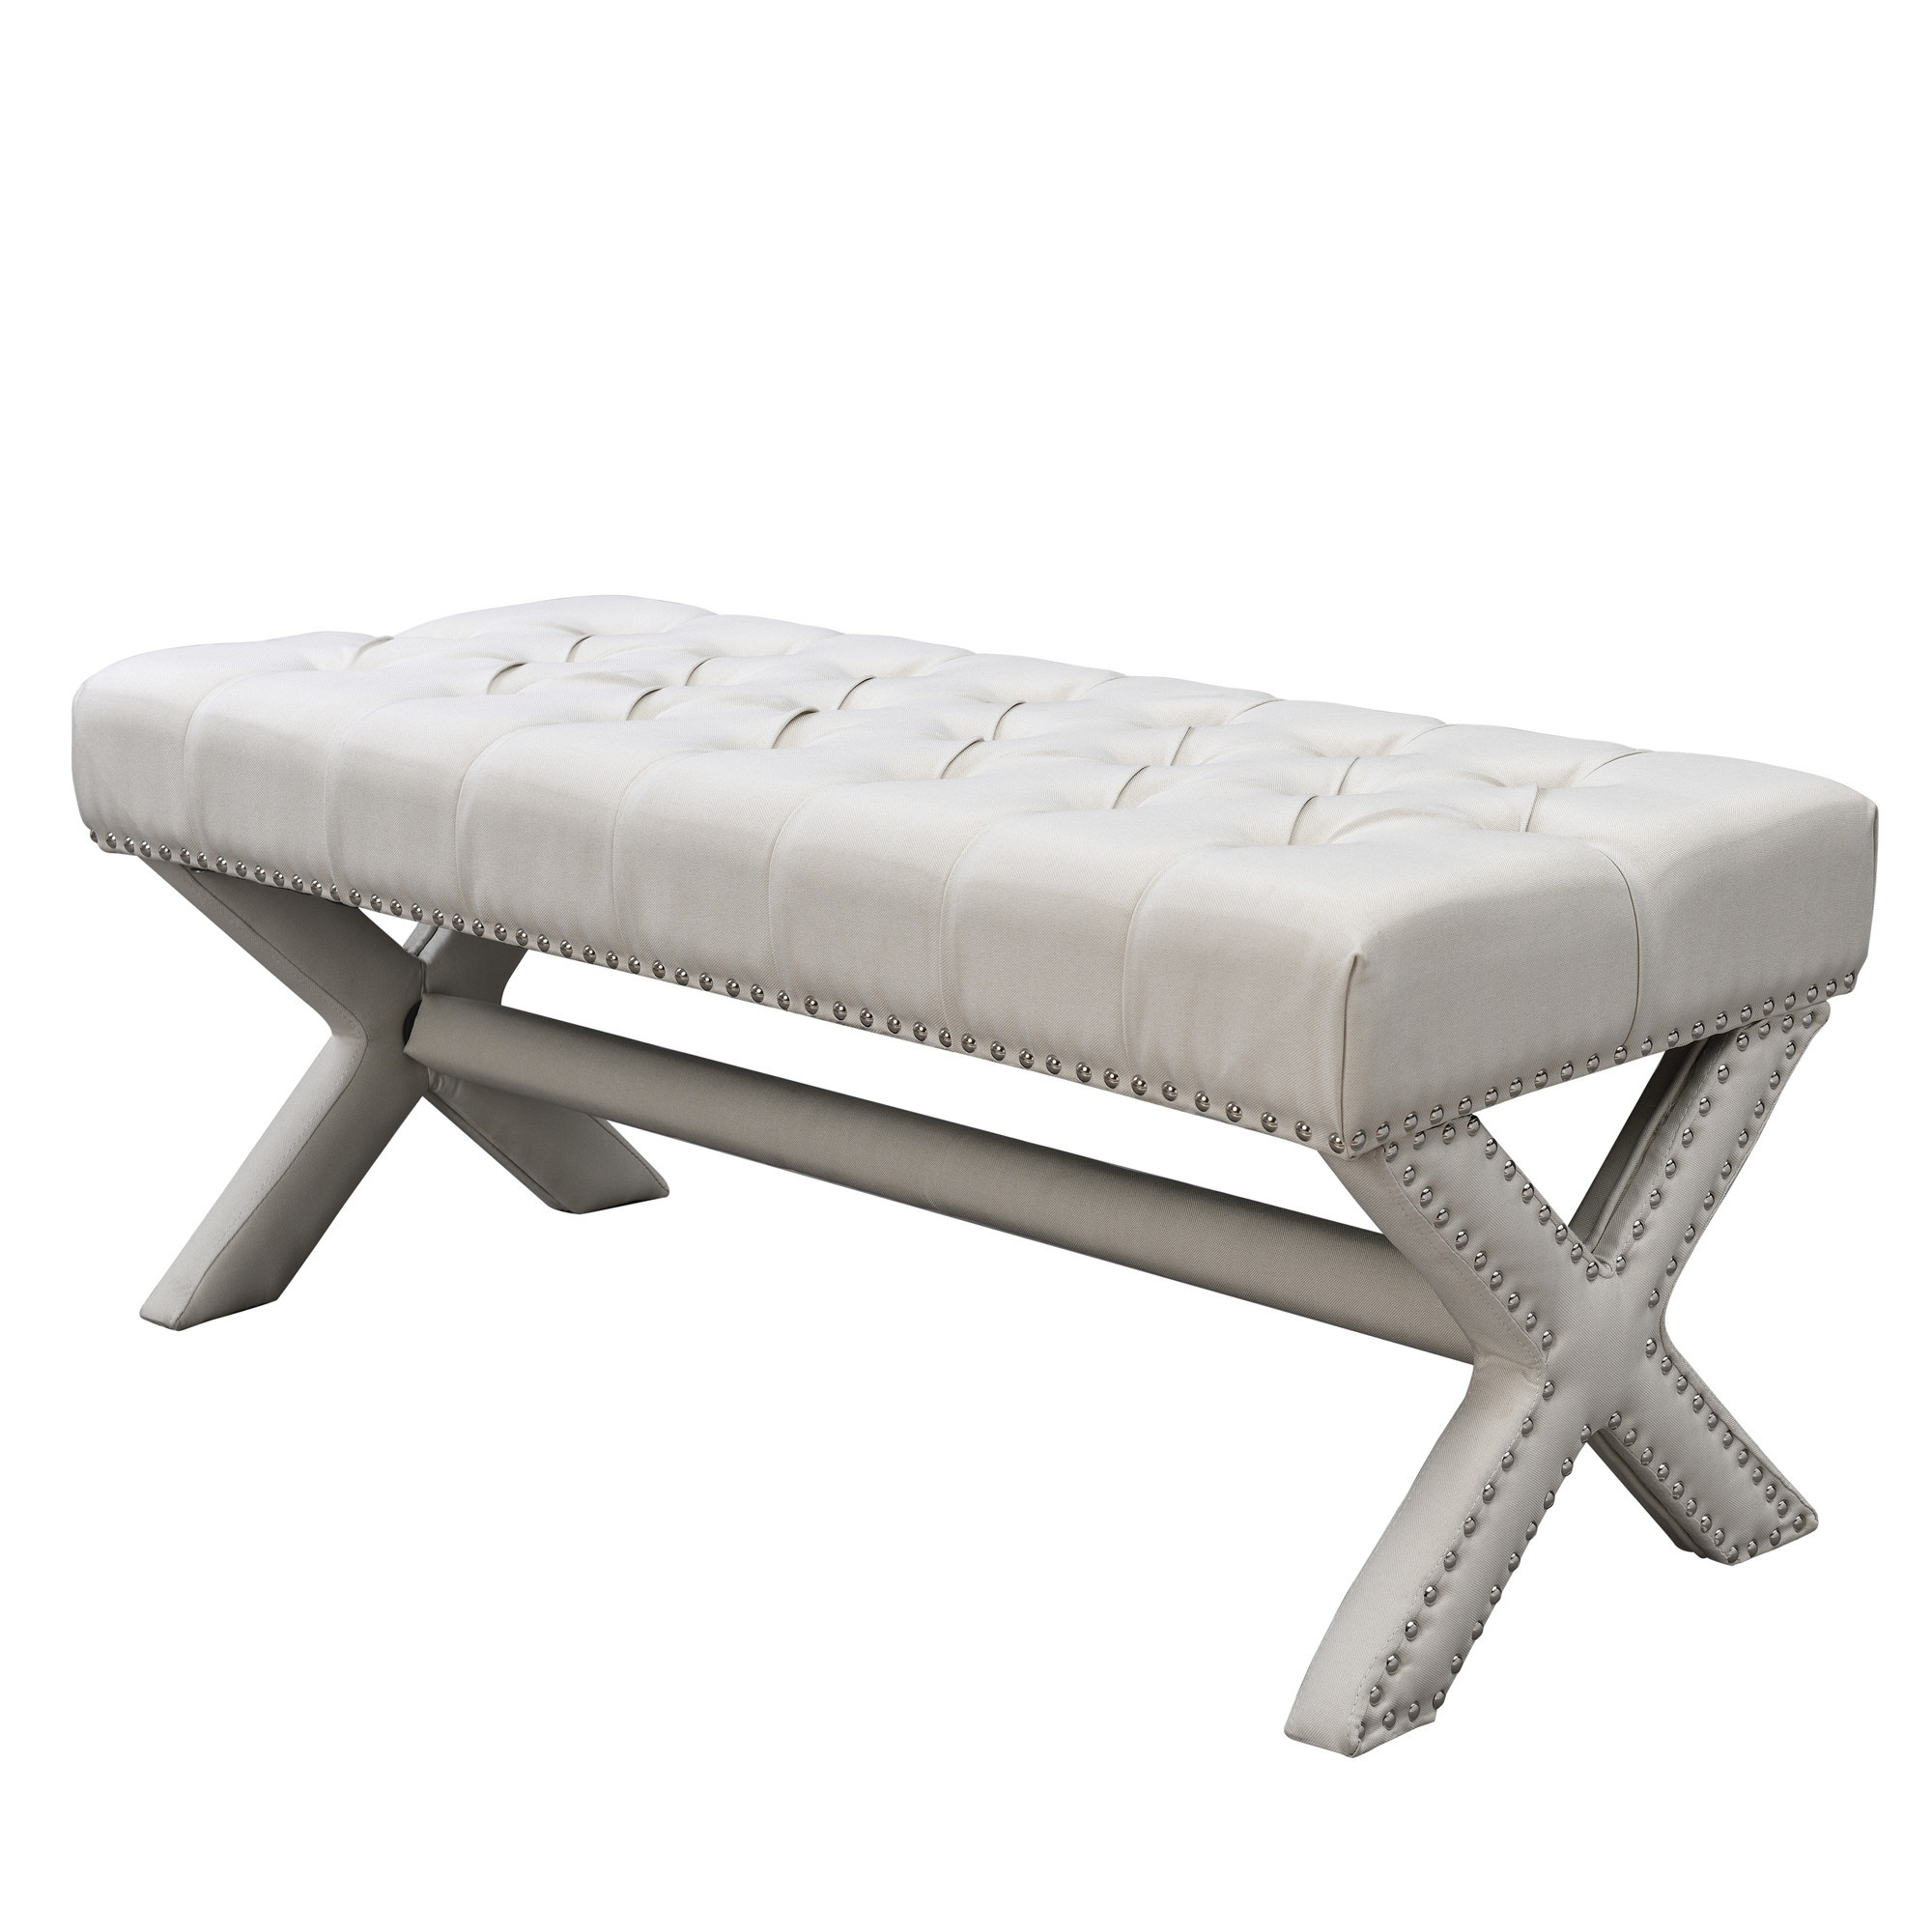 45" Cream Upholstered Linen Bench-490910-1